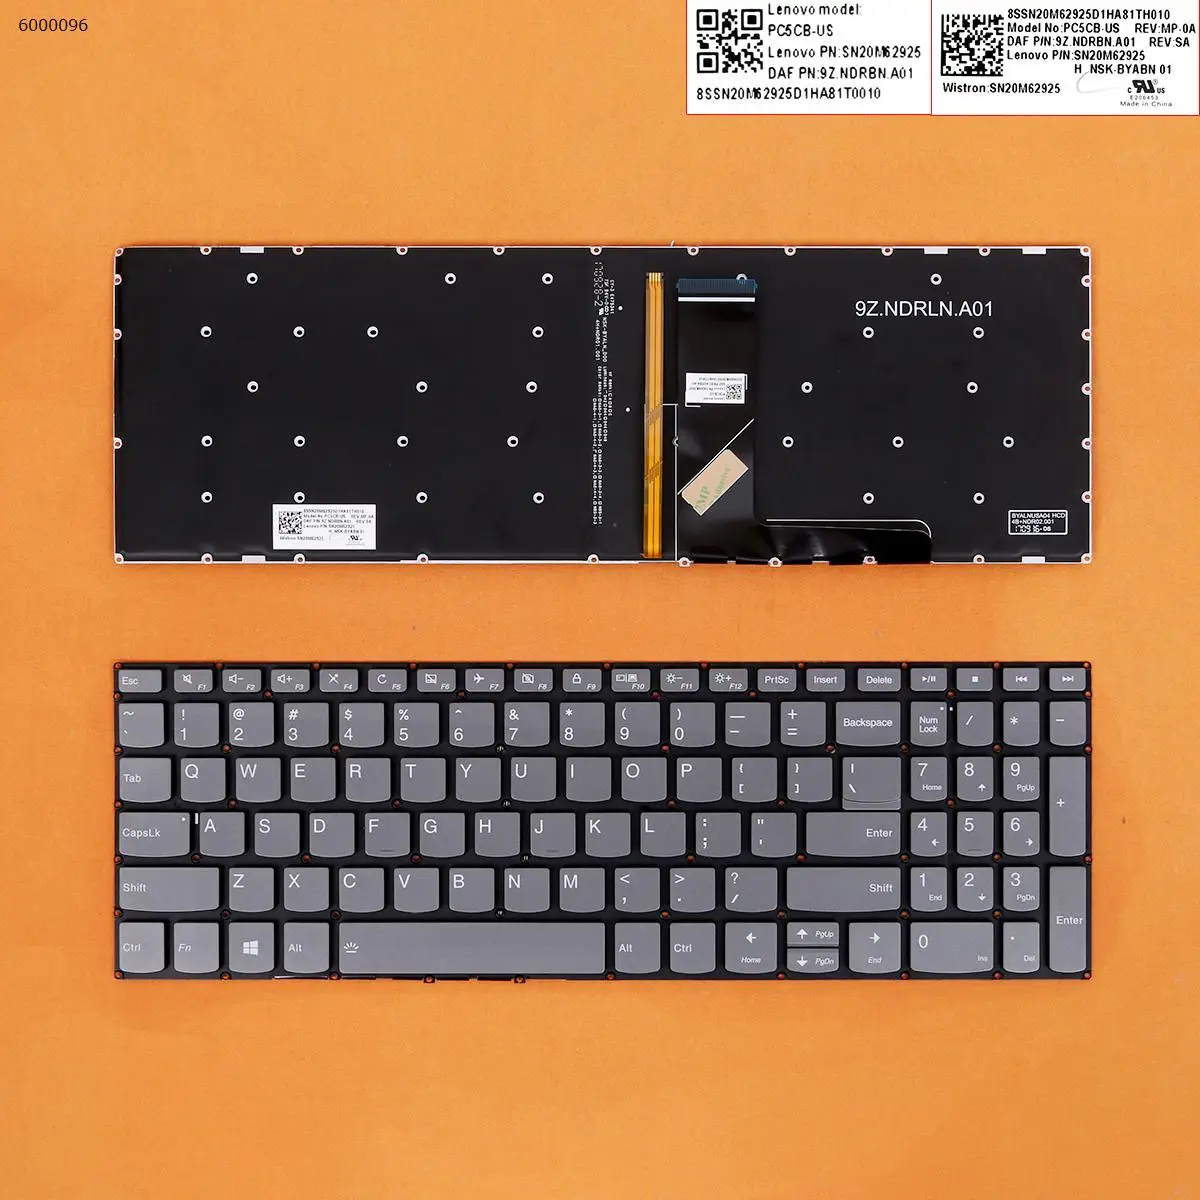 

US QWERTY New For Lenovo Ideapad v330-15isk v330-15ikb 330s-15ikb v130-15igm v130-15ikb Laptop Keyboard with Backlit NO Frame